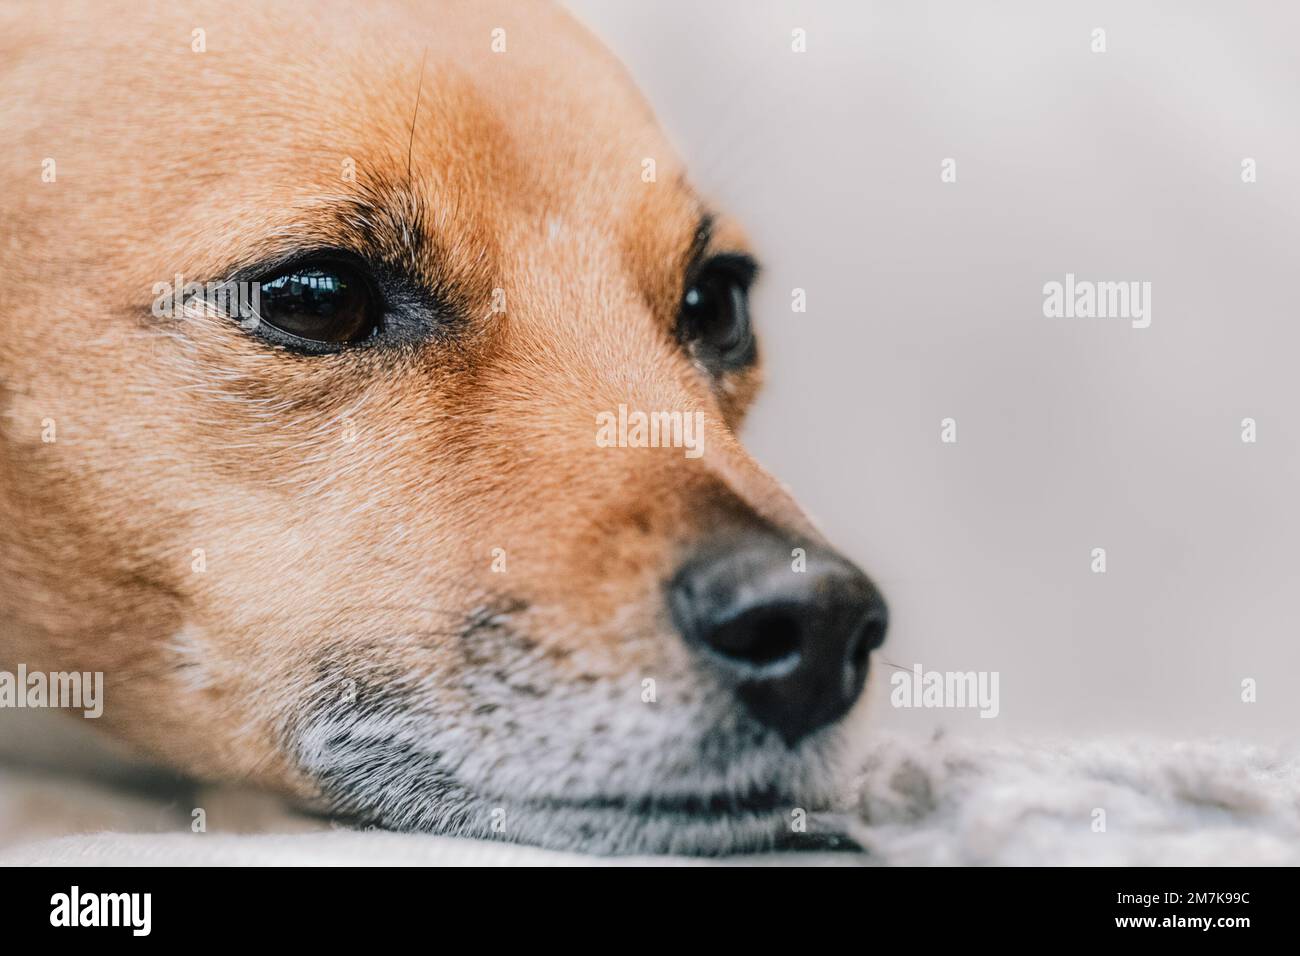 Adorabile e carino ritratto del cane Jack Russell Terrier. Colpo di testa di un cane da fotografia di un cane fotografa. Foto Stock